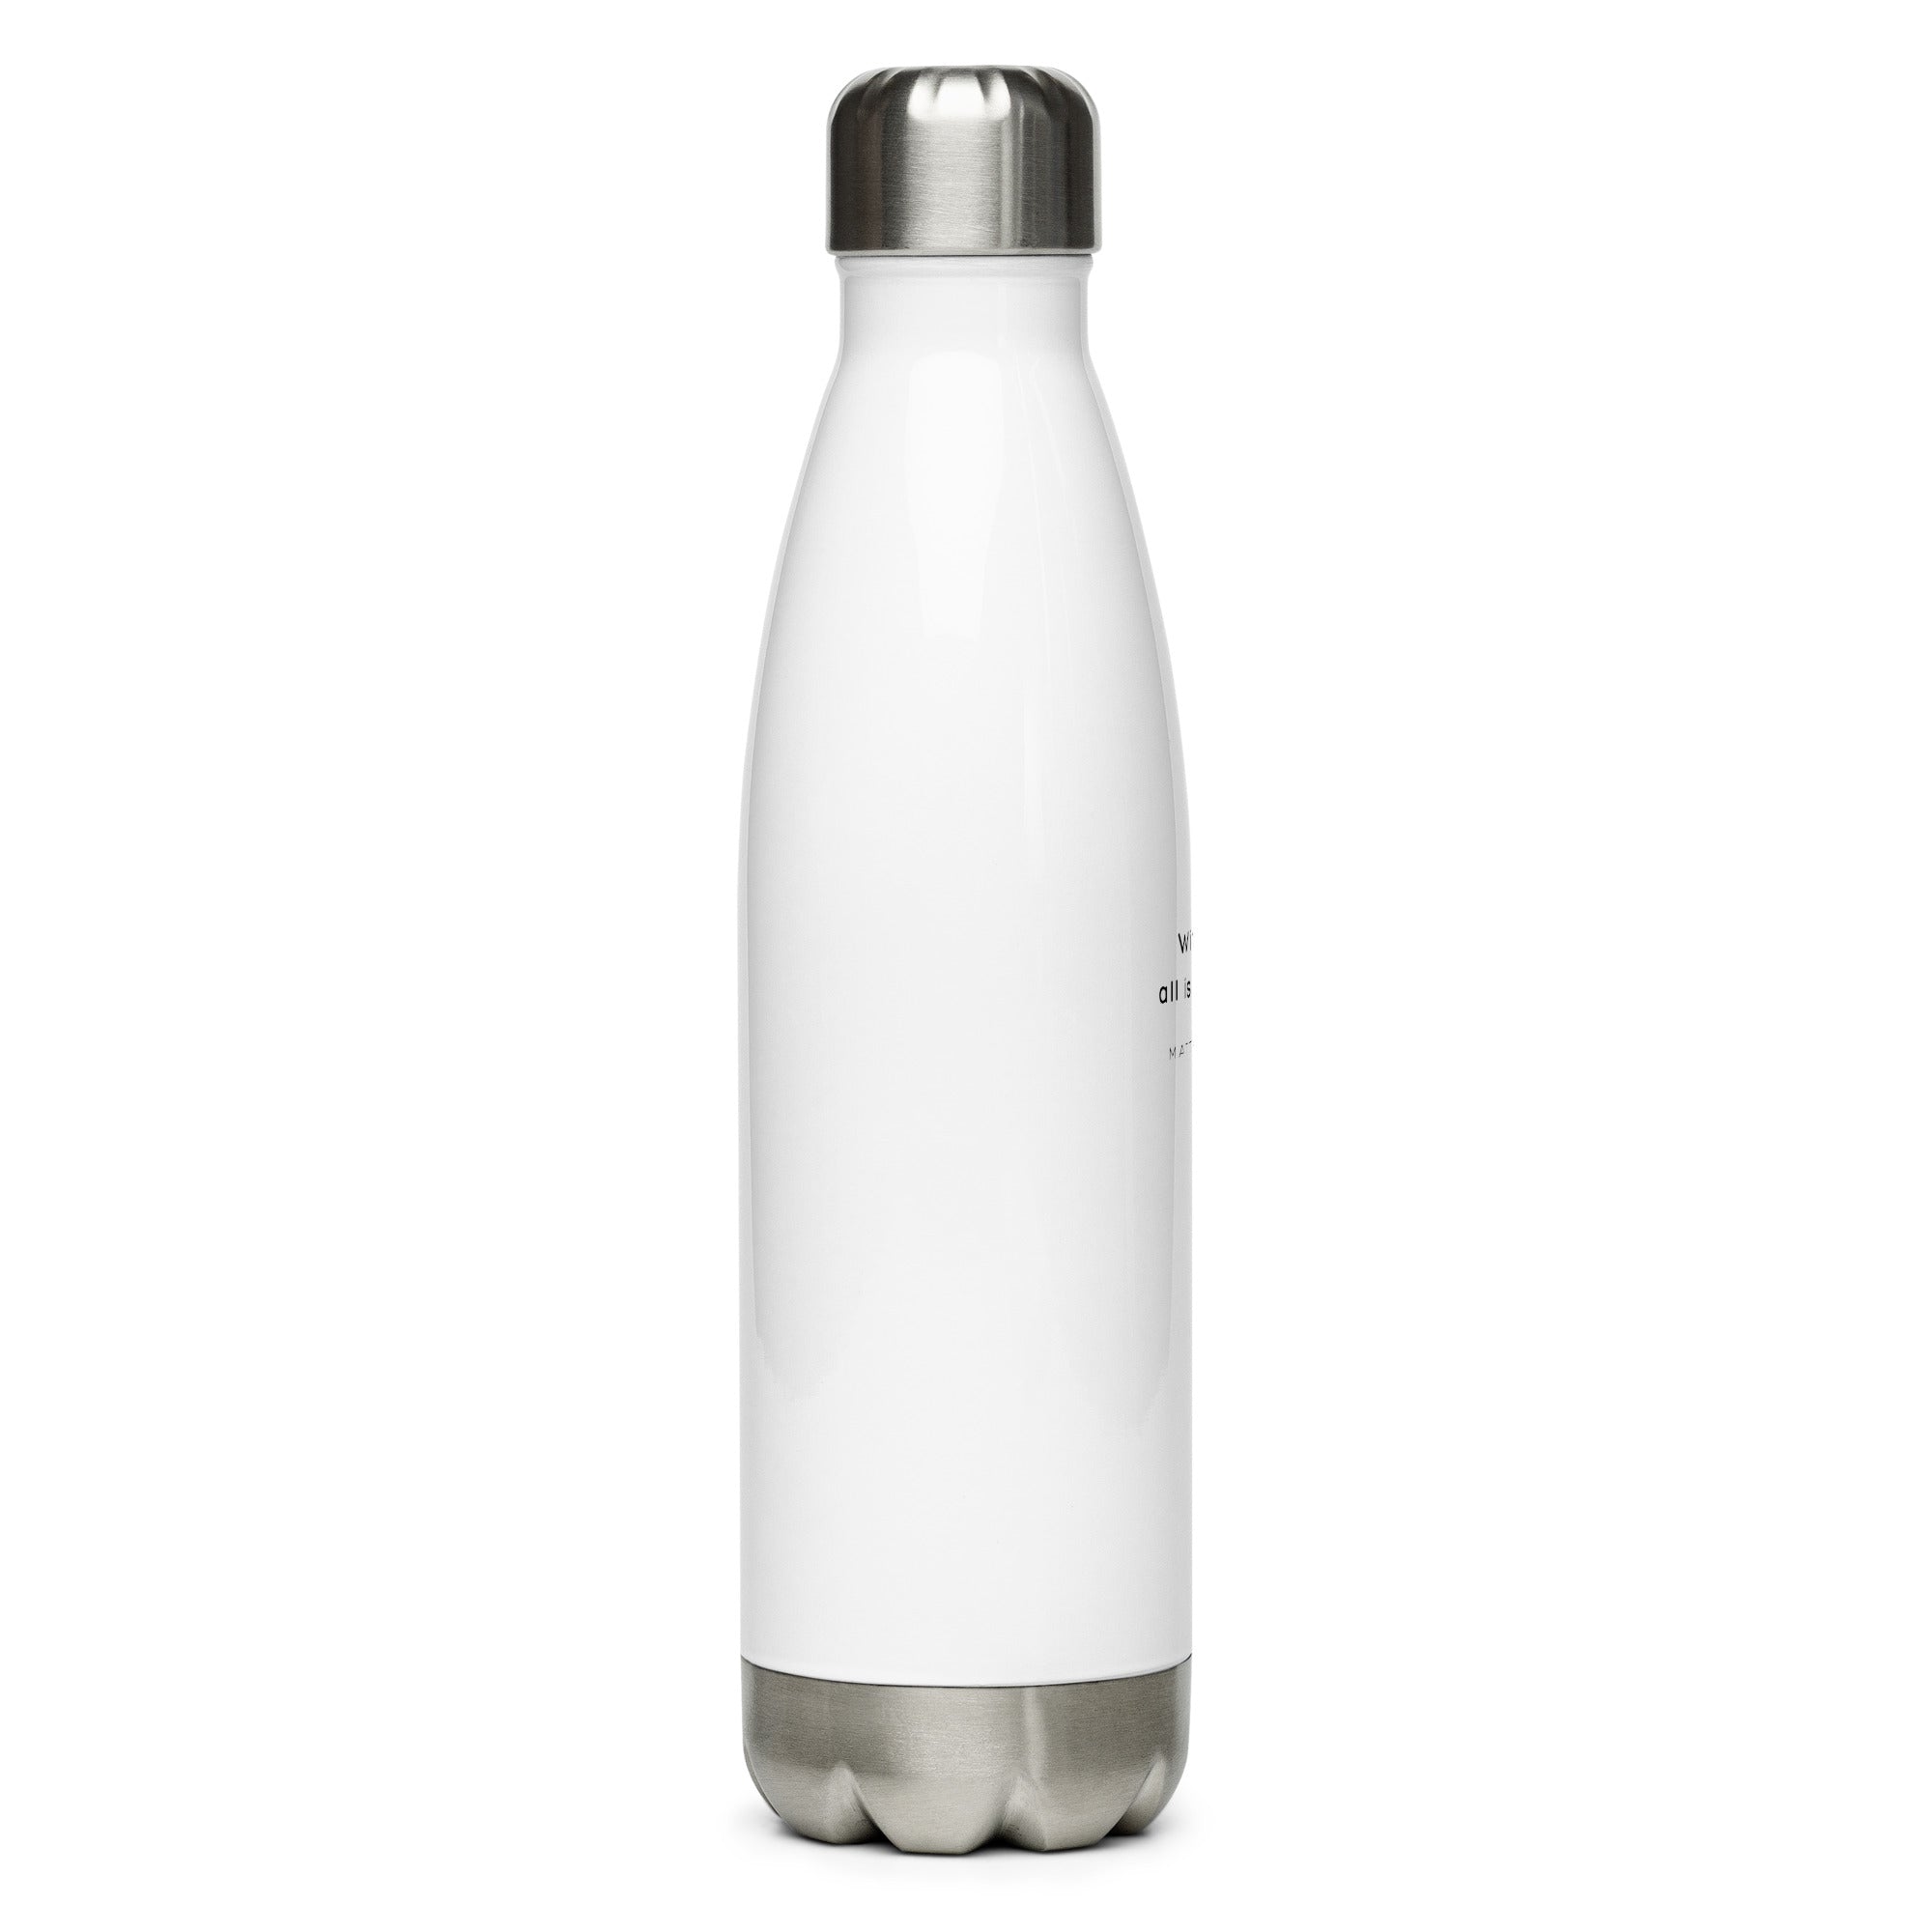 Stainless steel water bottle - Matthew 19:26